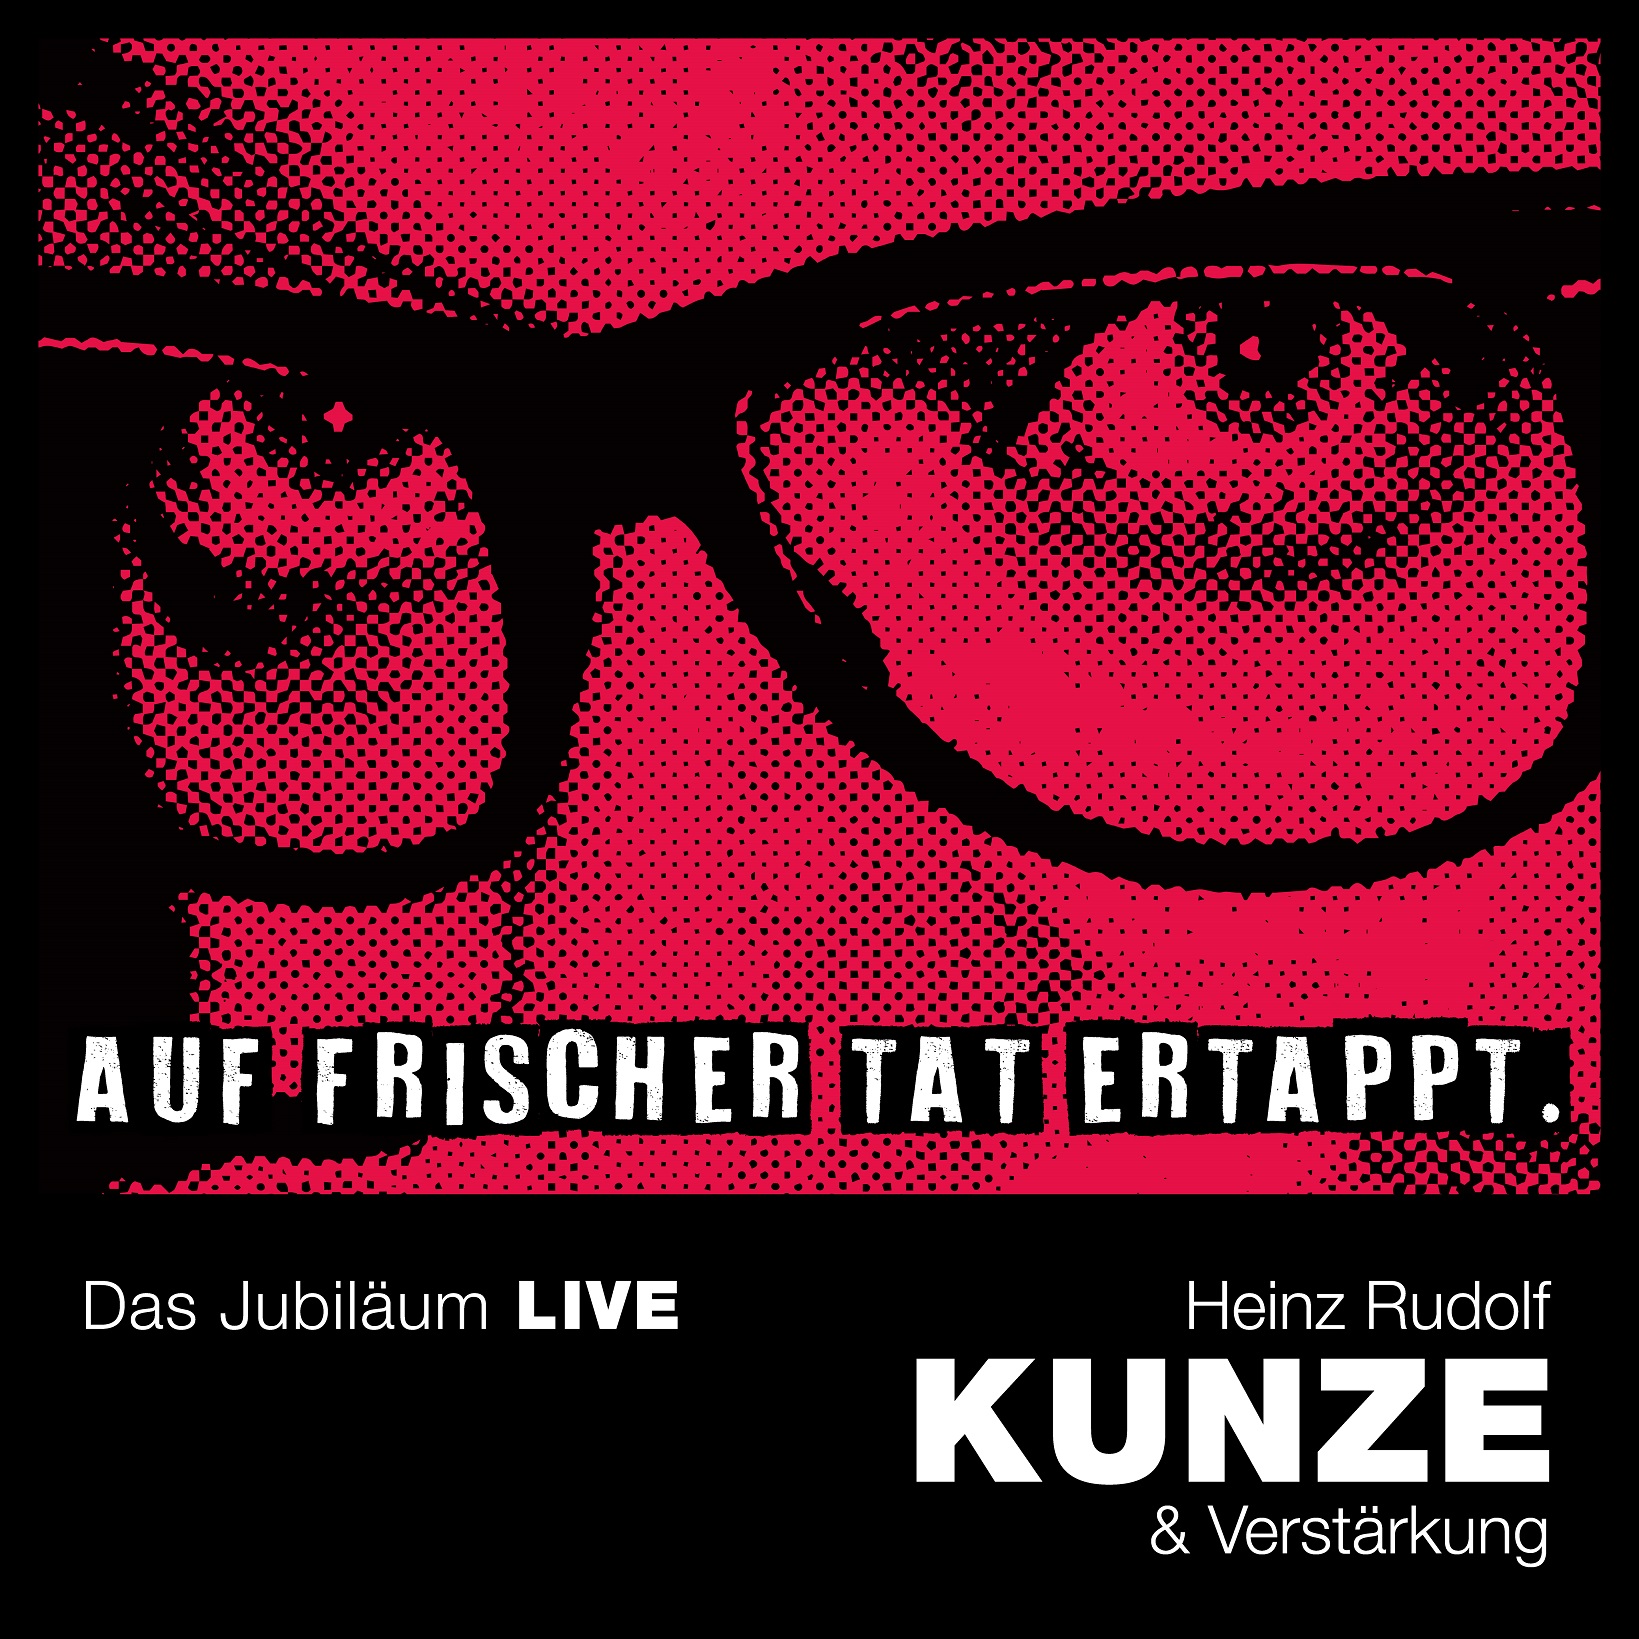 HEINZ RUDOLF KUNZE veröffentlicht “Auf frischer Tat ertappt – Das Jubiläum LIVE” am 25.11.2022